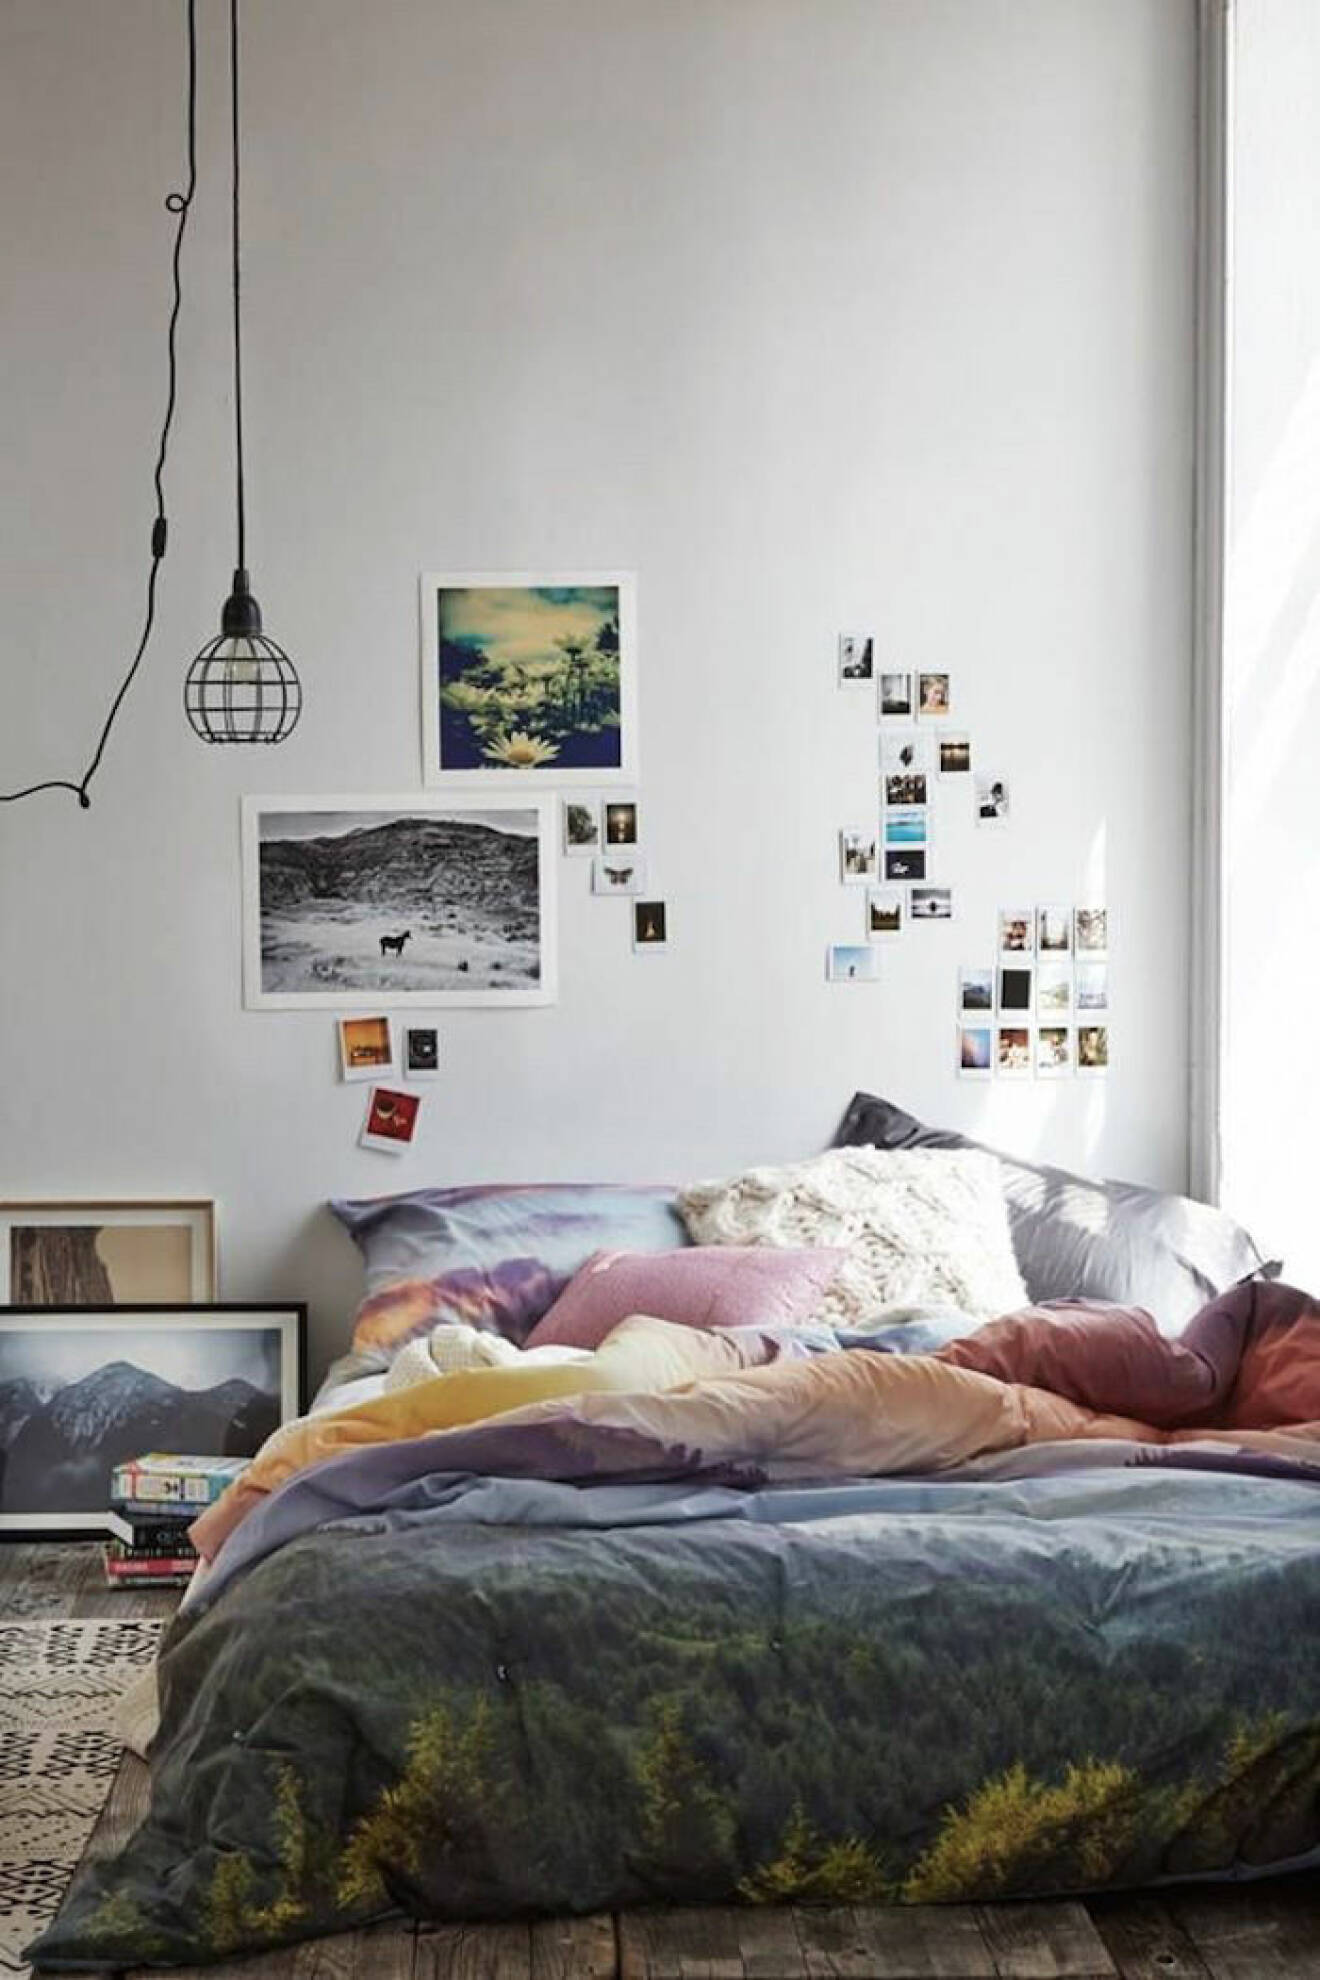 Säng på golvet och färgglada lakan. Foton på väggen.